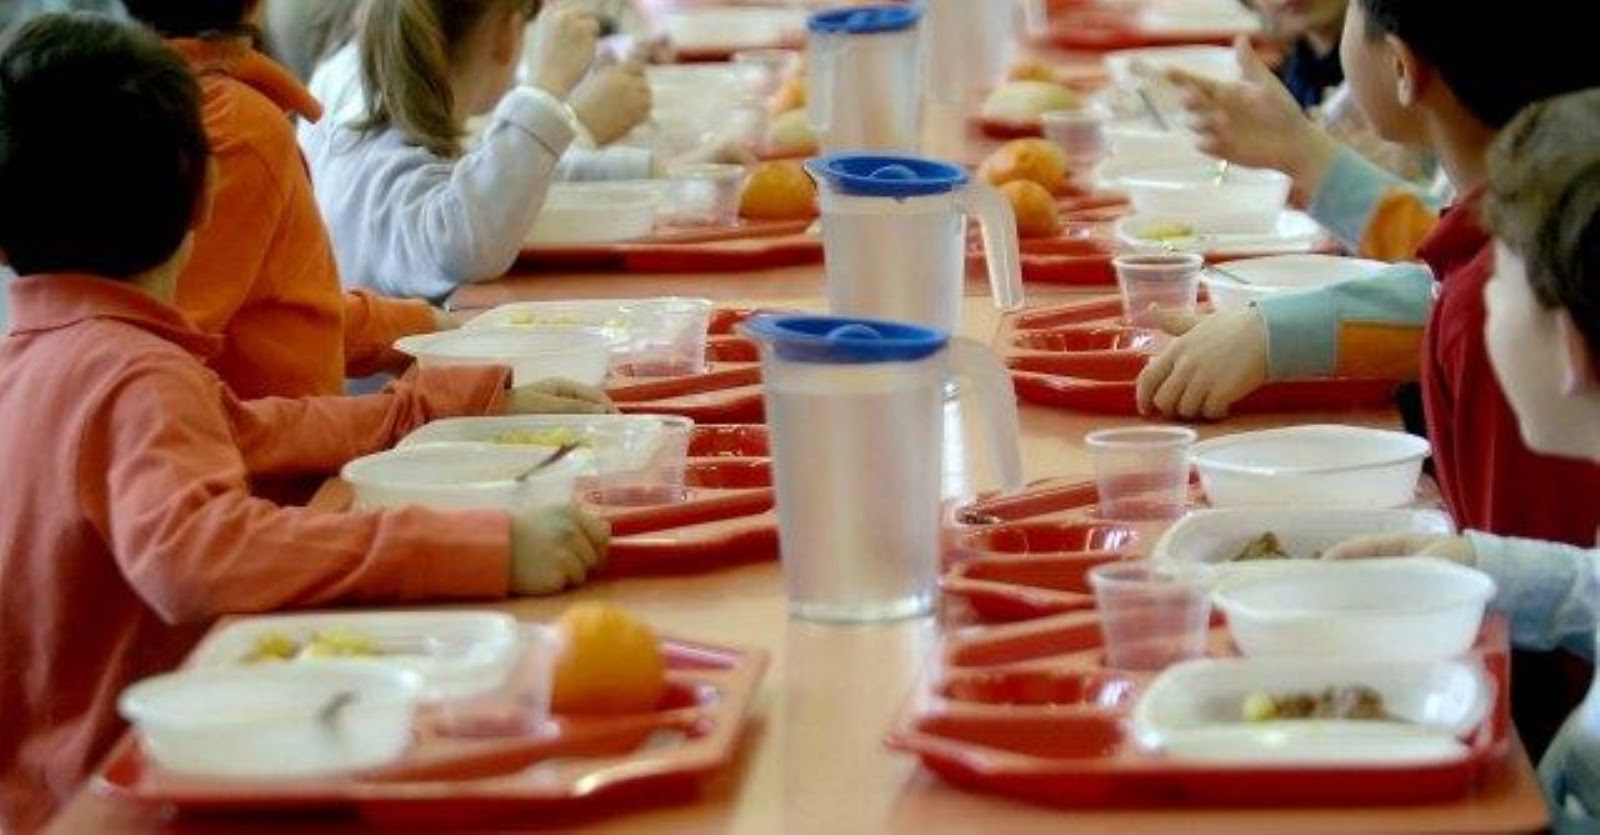 Matera, nuovo bando comunale per il servizio mensa scolastica